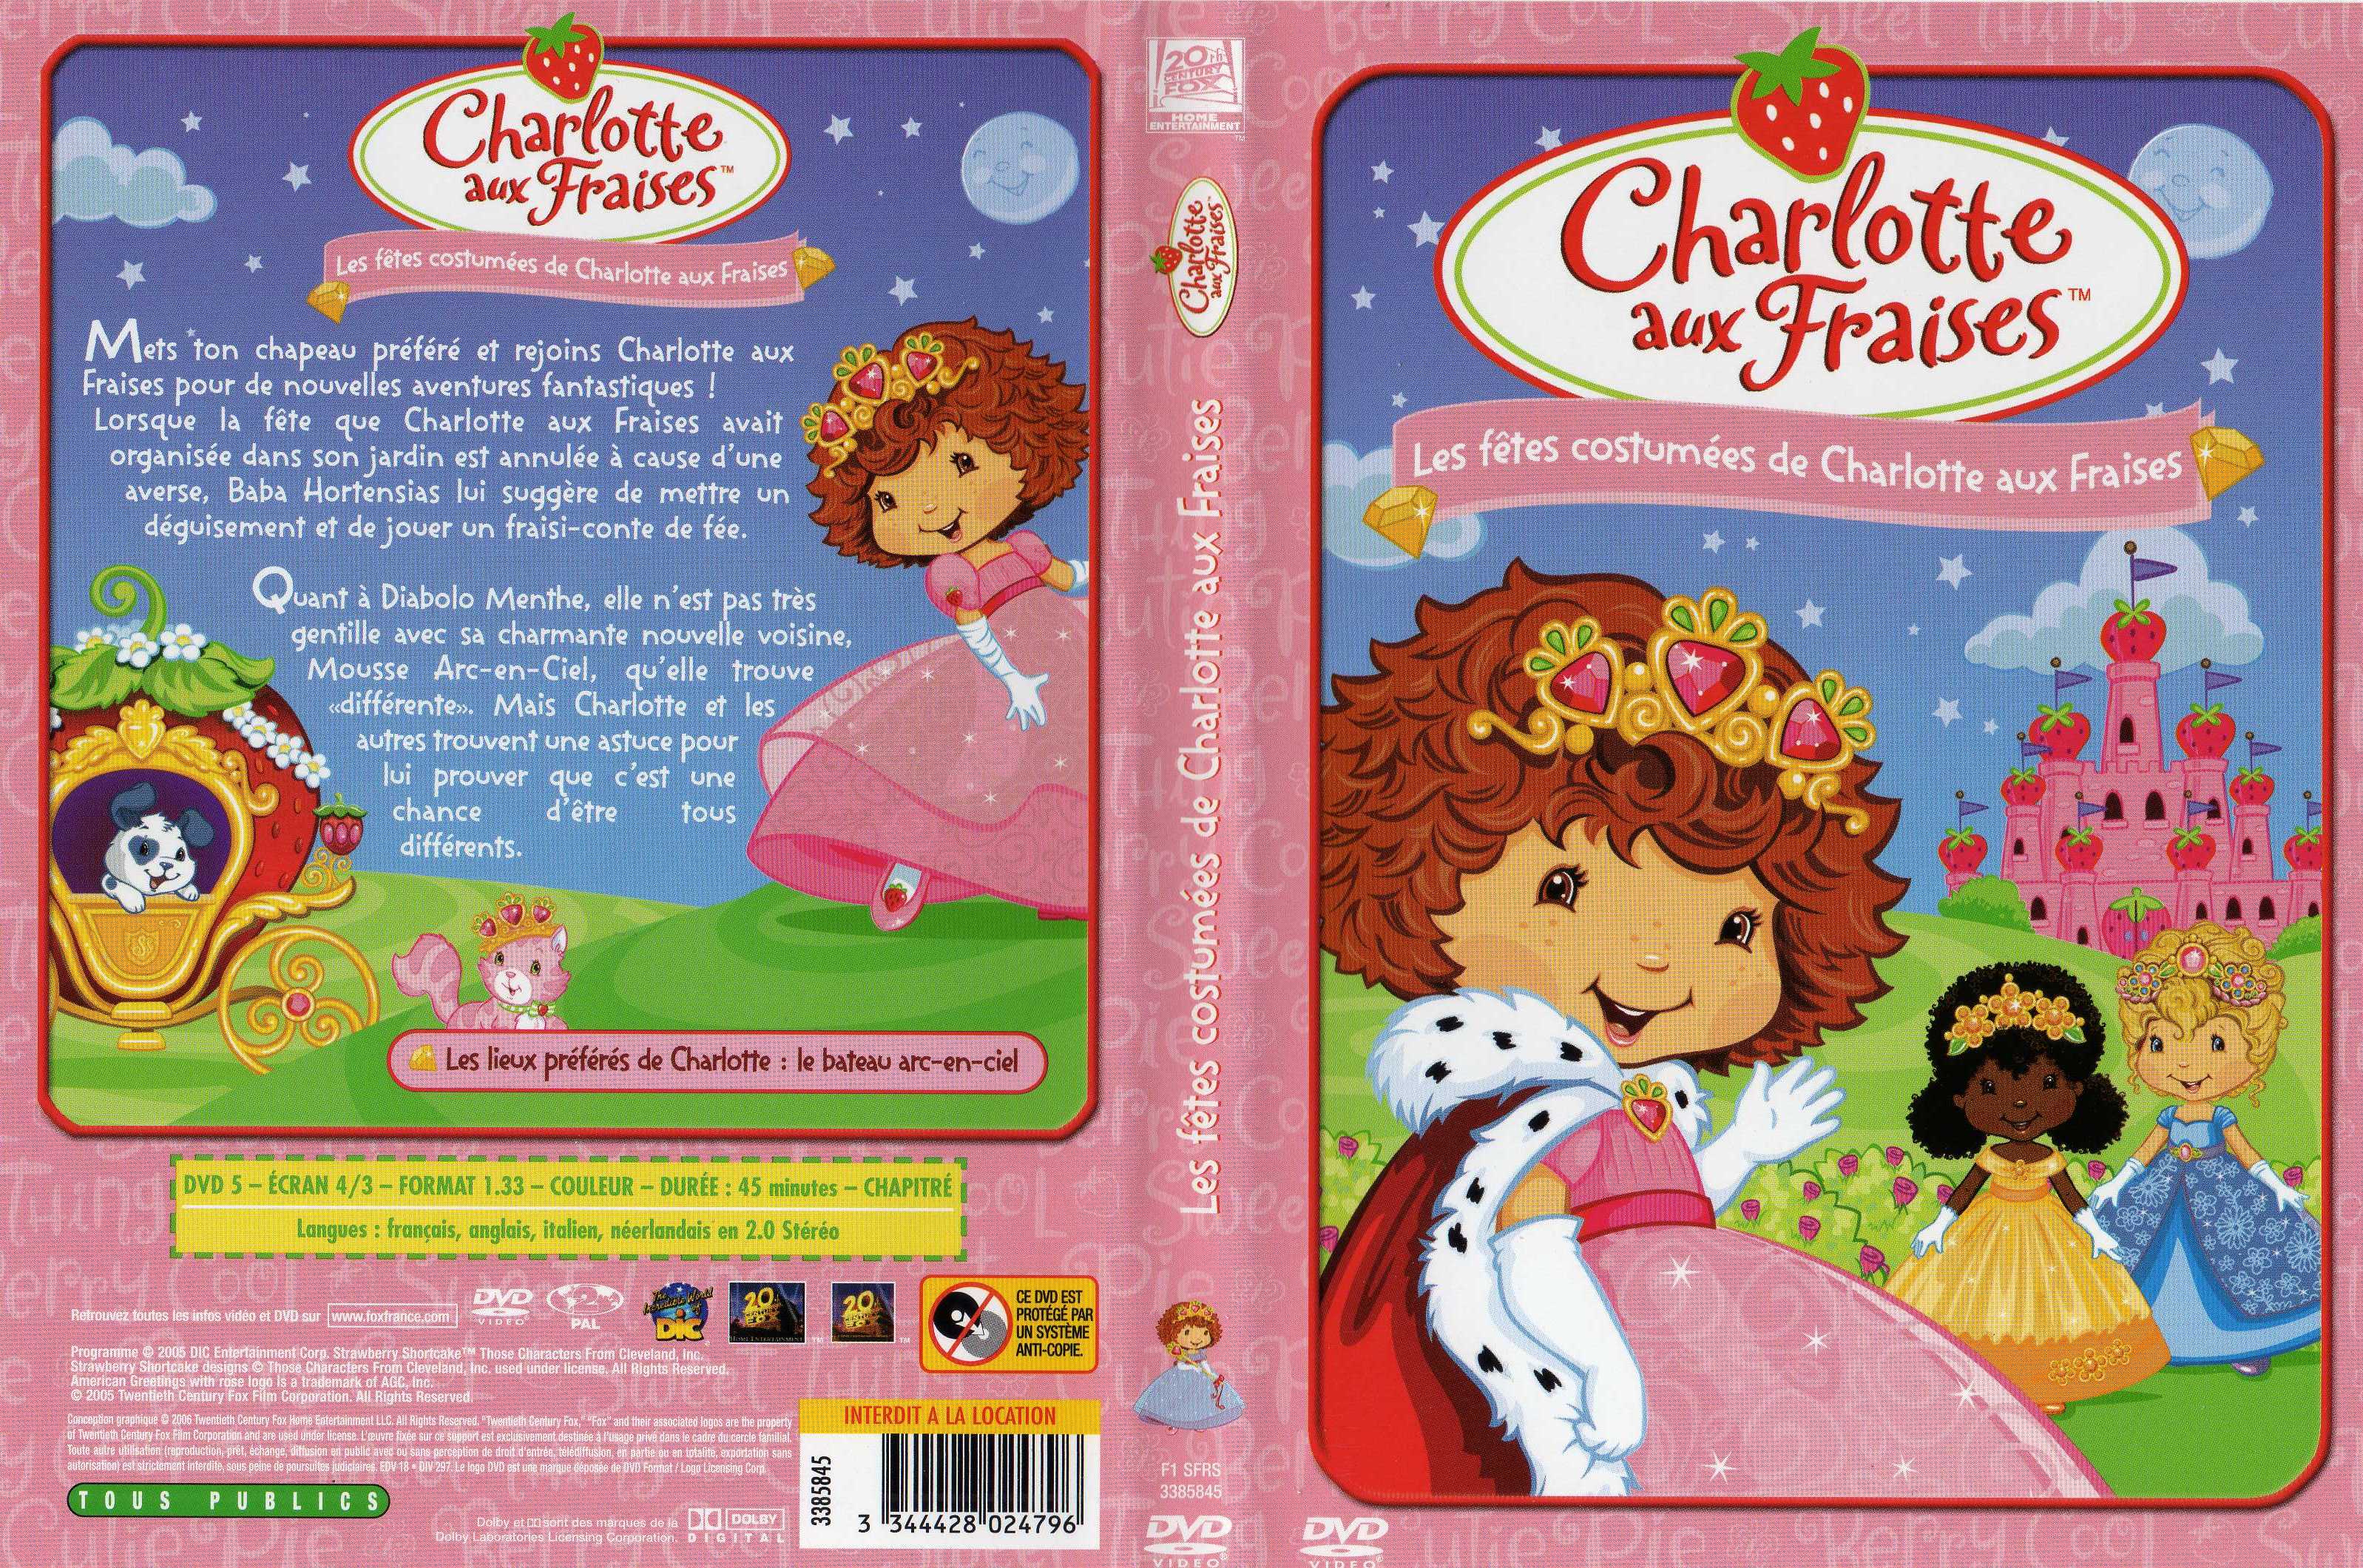 Jaquette DVD Charlotte aux fraises les fetes costumes